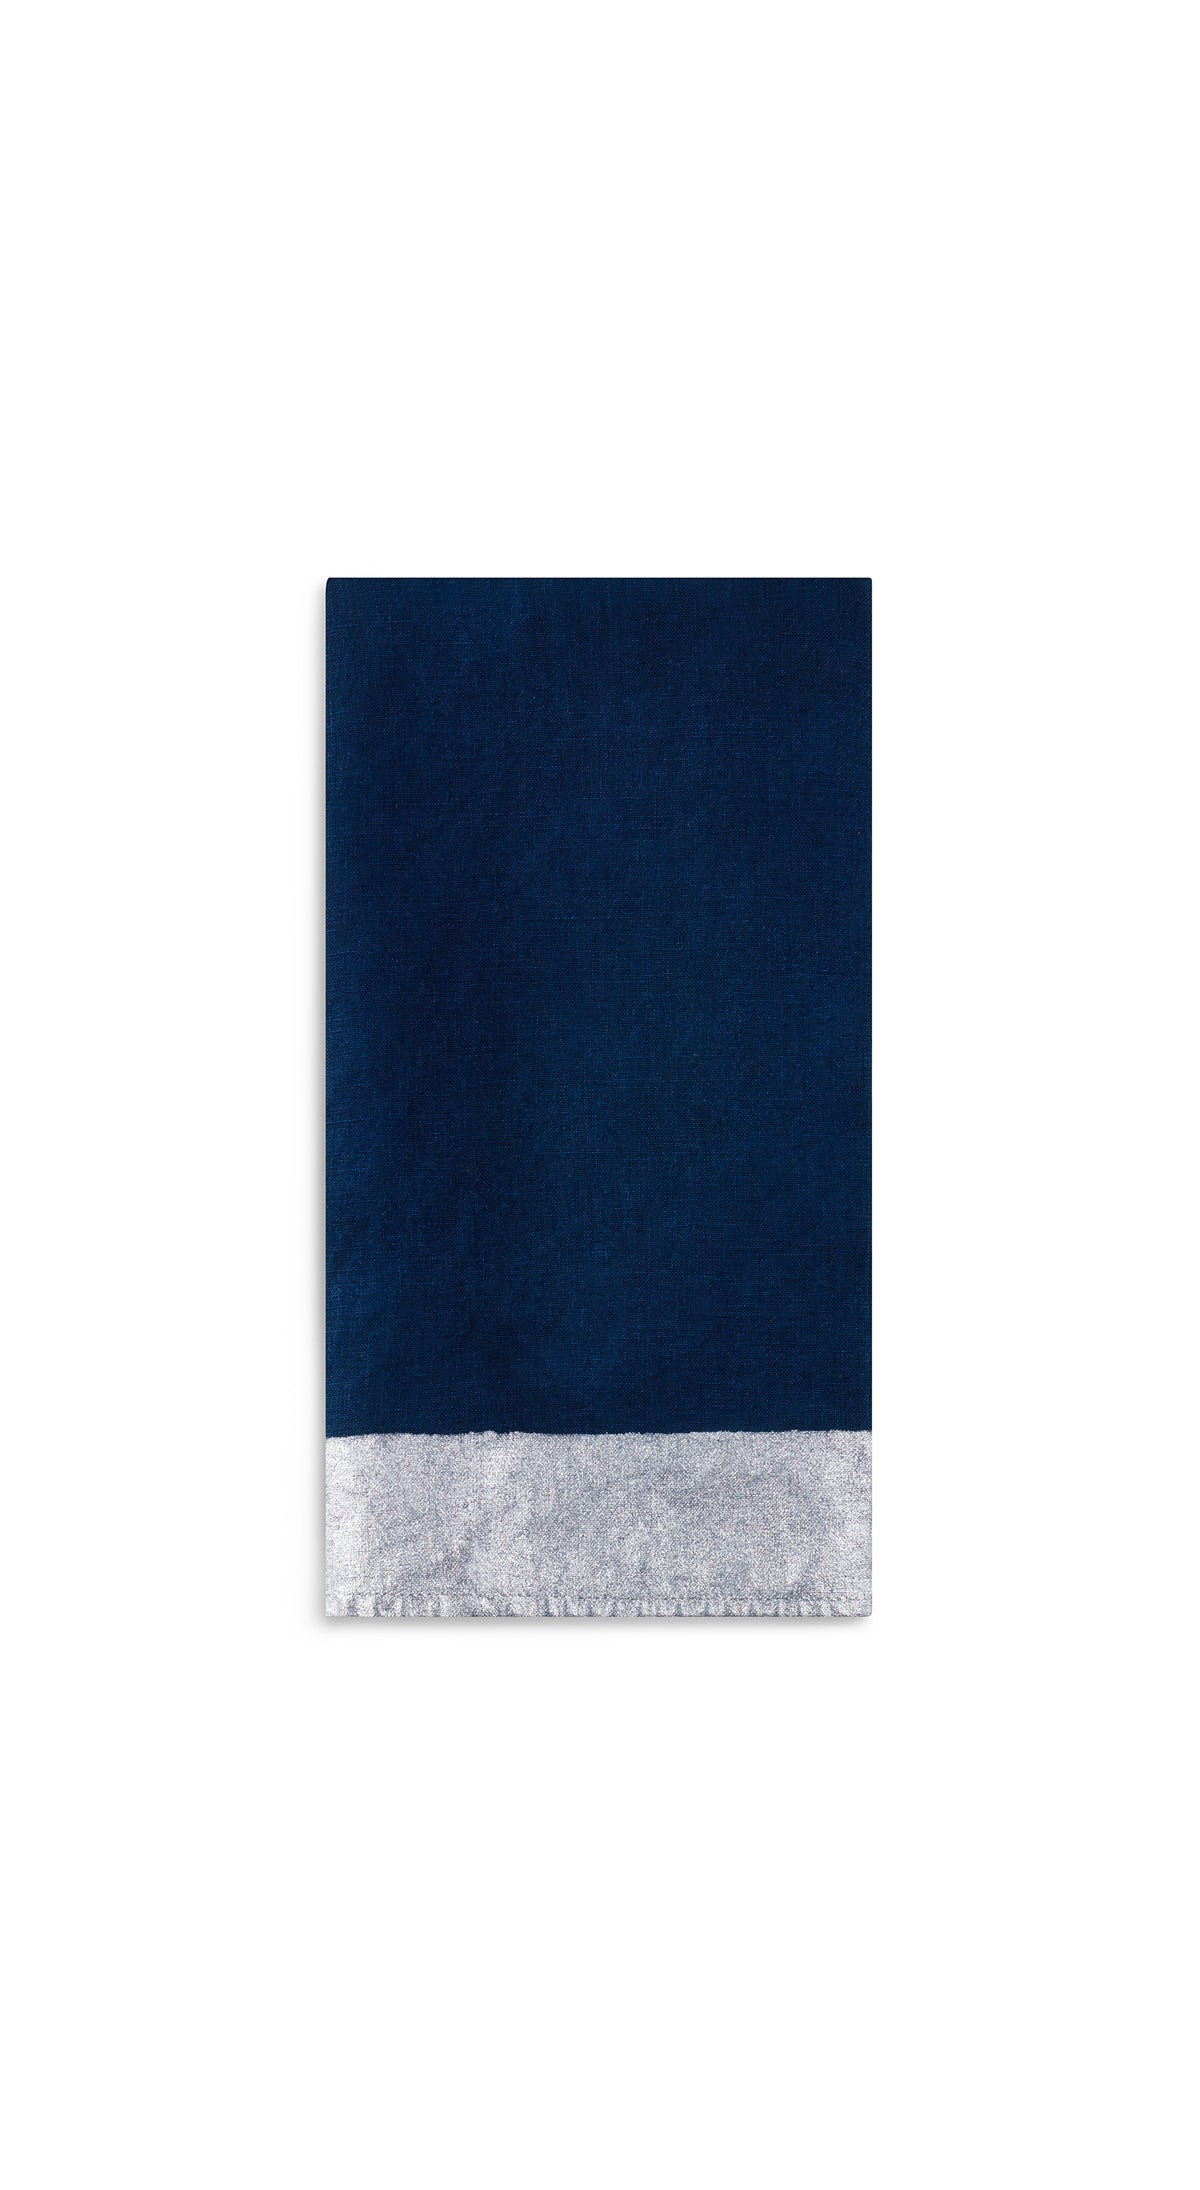 Silver Edge Linen Napkin in Midnight Blue, 50x50cm